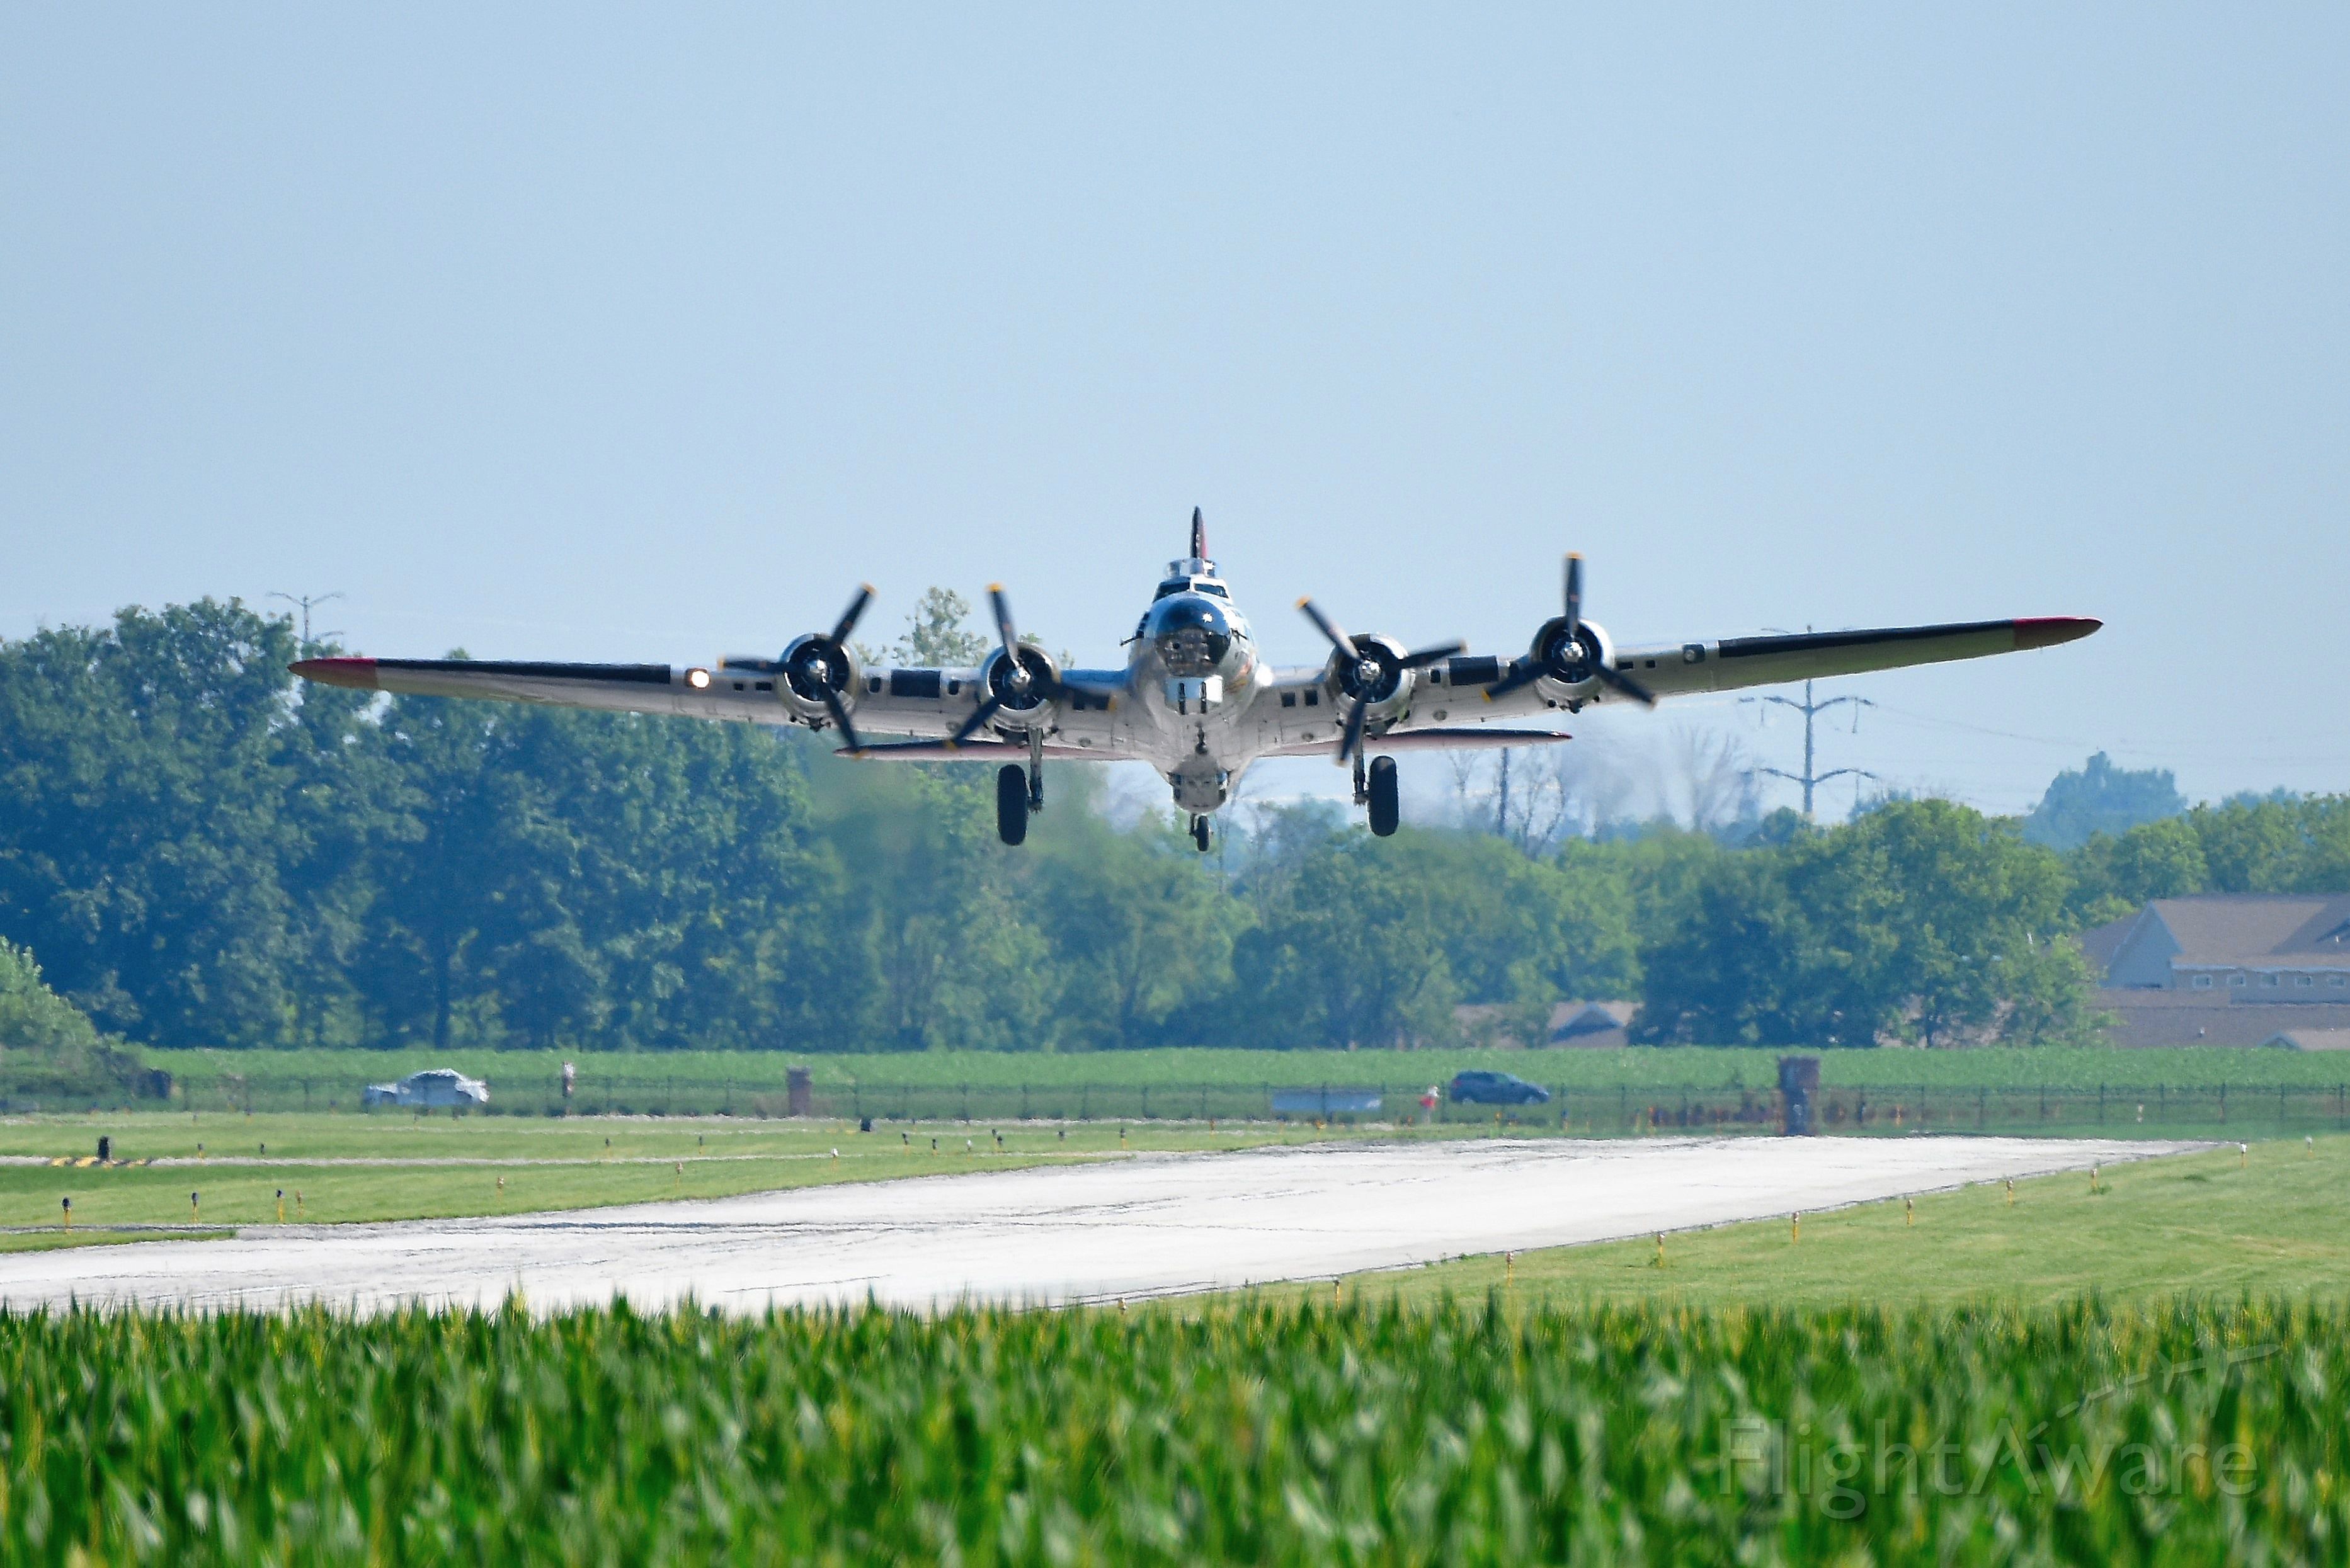 Boeing B-17 Flying Fortress (N5017N) - Aluminum Overcast departing Runway 19.